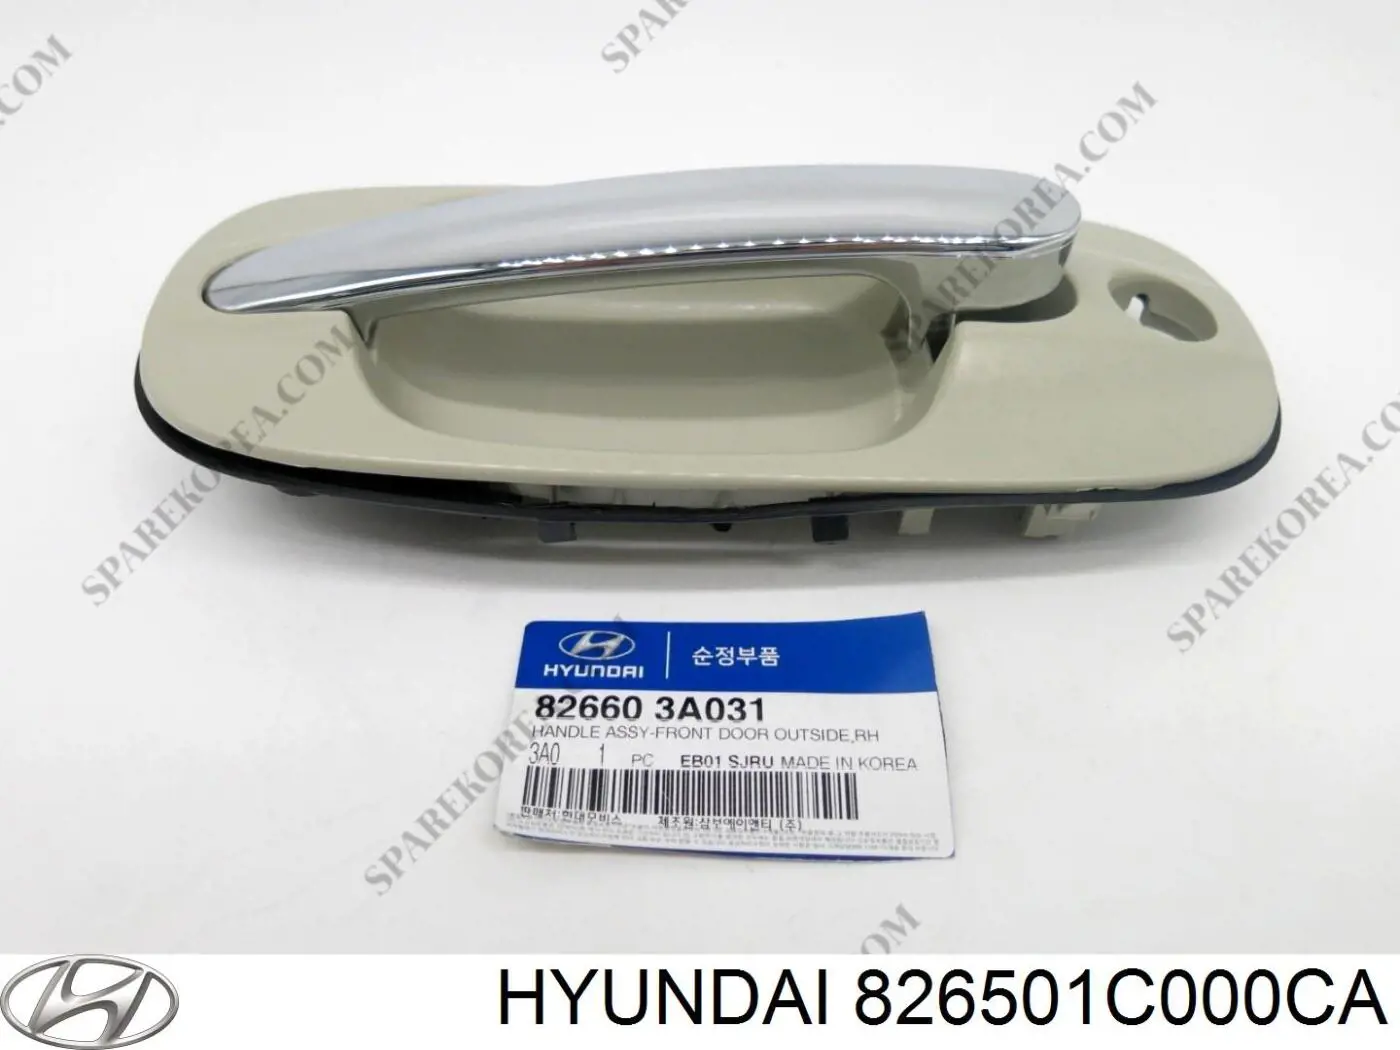 826501C000CA Hyundai/Kia tirador de puerta exterior delantero izquierda